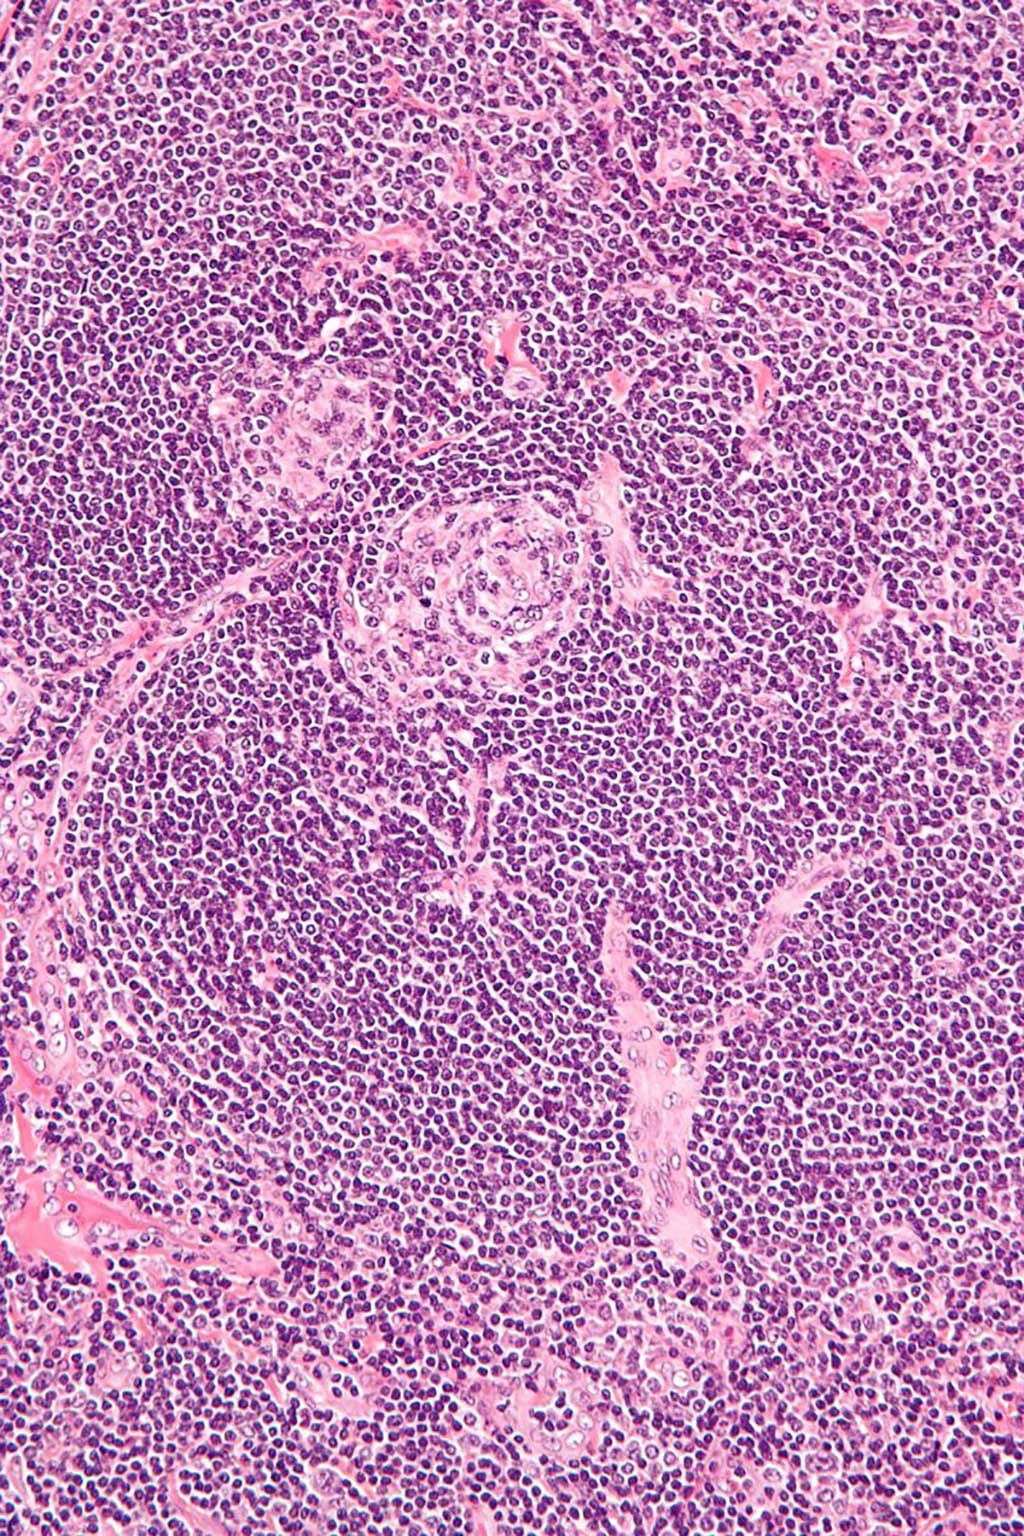 Imagen: Microfotografía de gran aumento de la enfermedad de Castleman, variante vascular hialina, también conocida como hiperplasia de ganglio linfático angiofolicular e hiperplasia de ganglio linfático gigante (Fotografía cortesía de Wikimedia Commons)